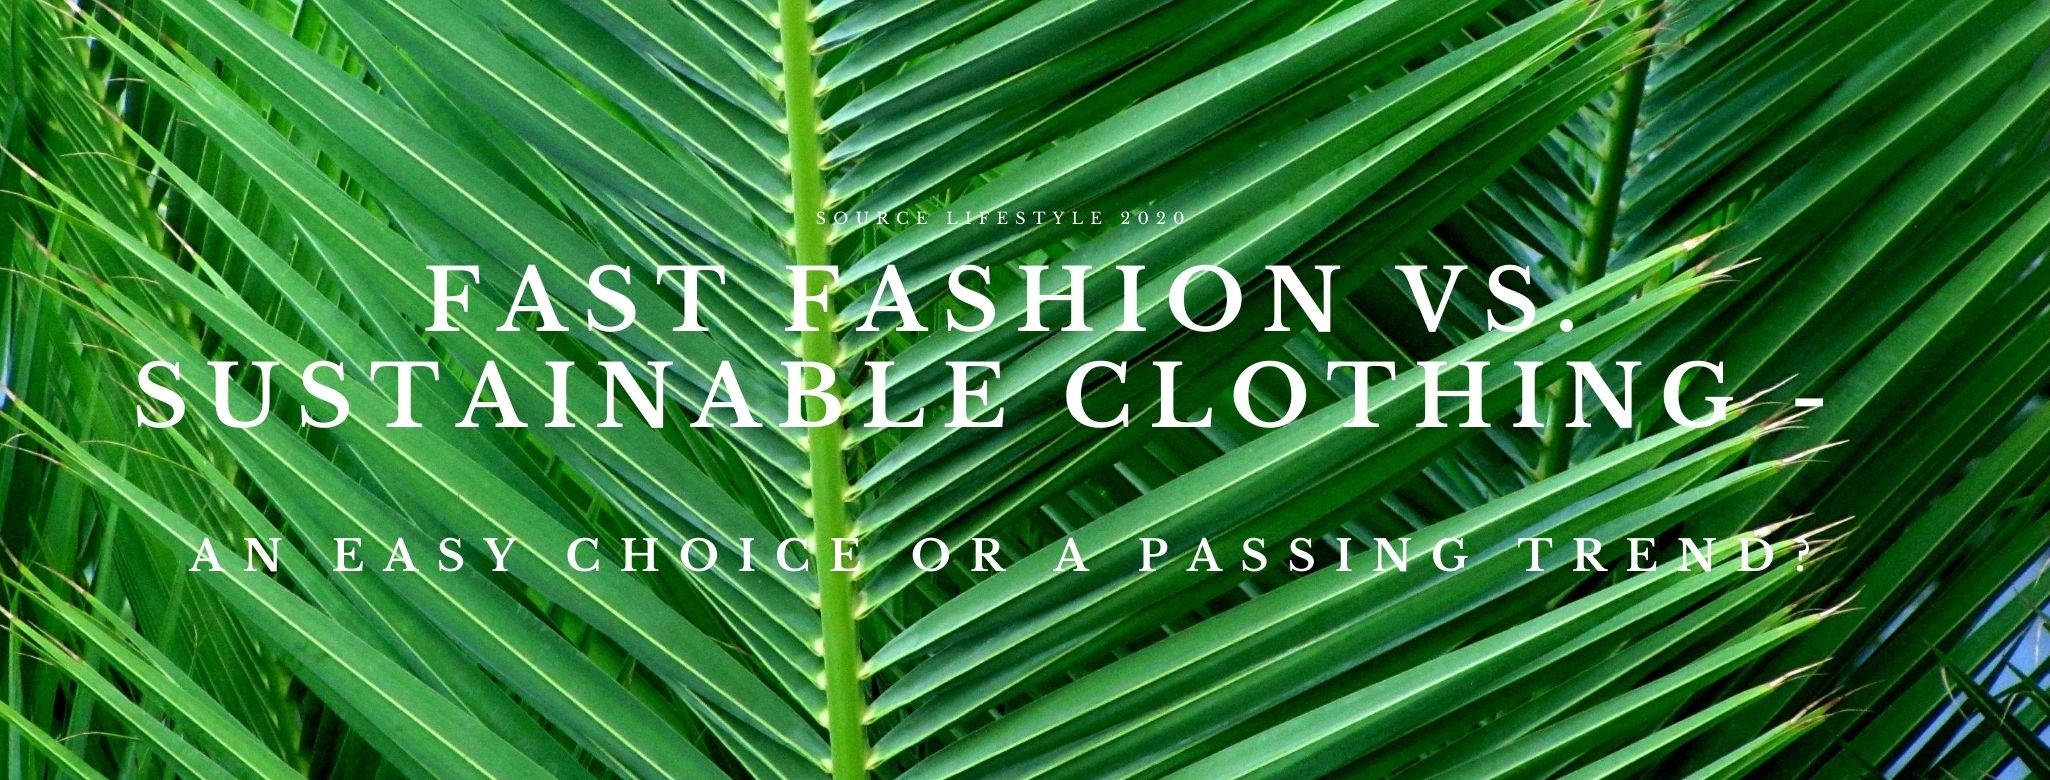 sustainable clothing source lifestyle blog